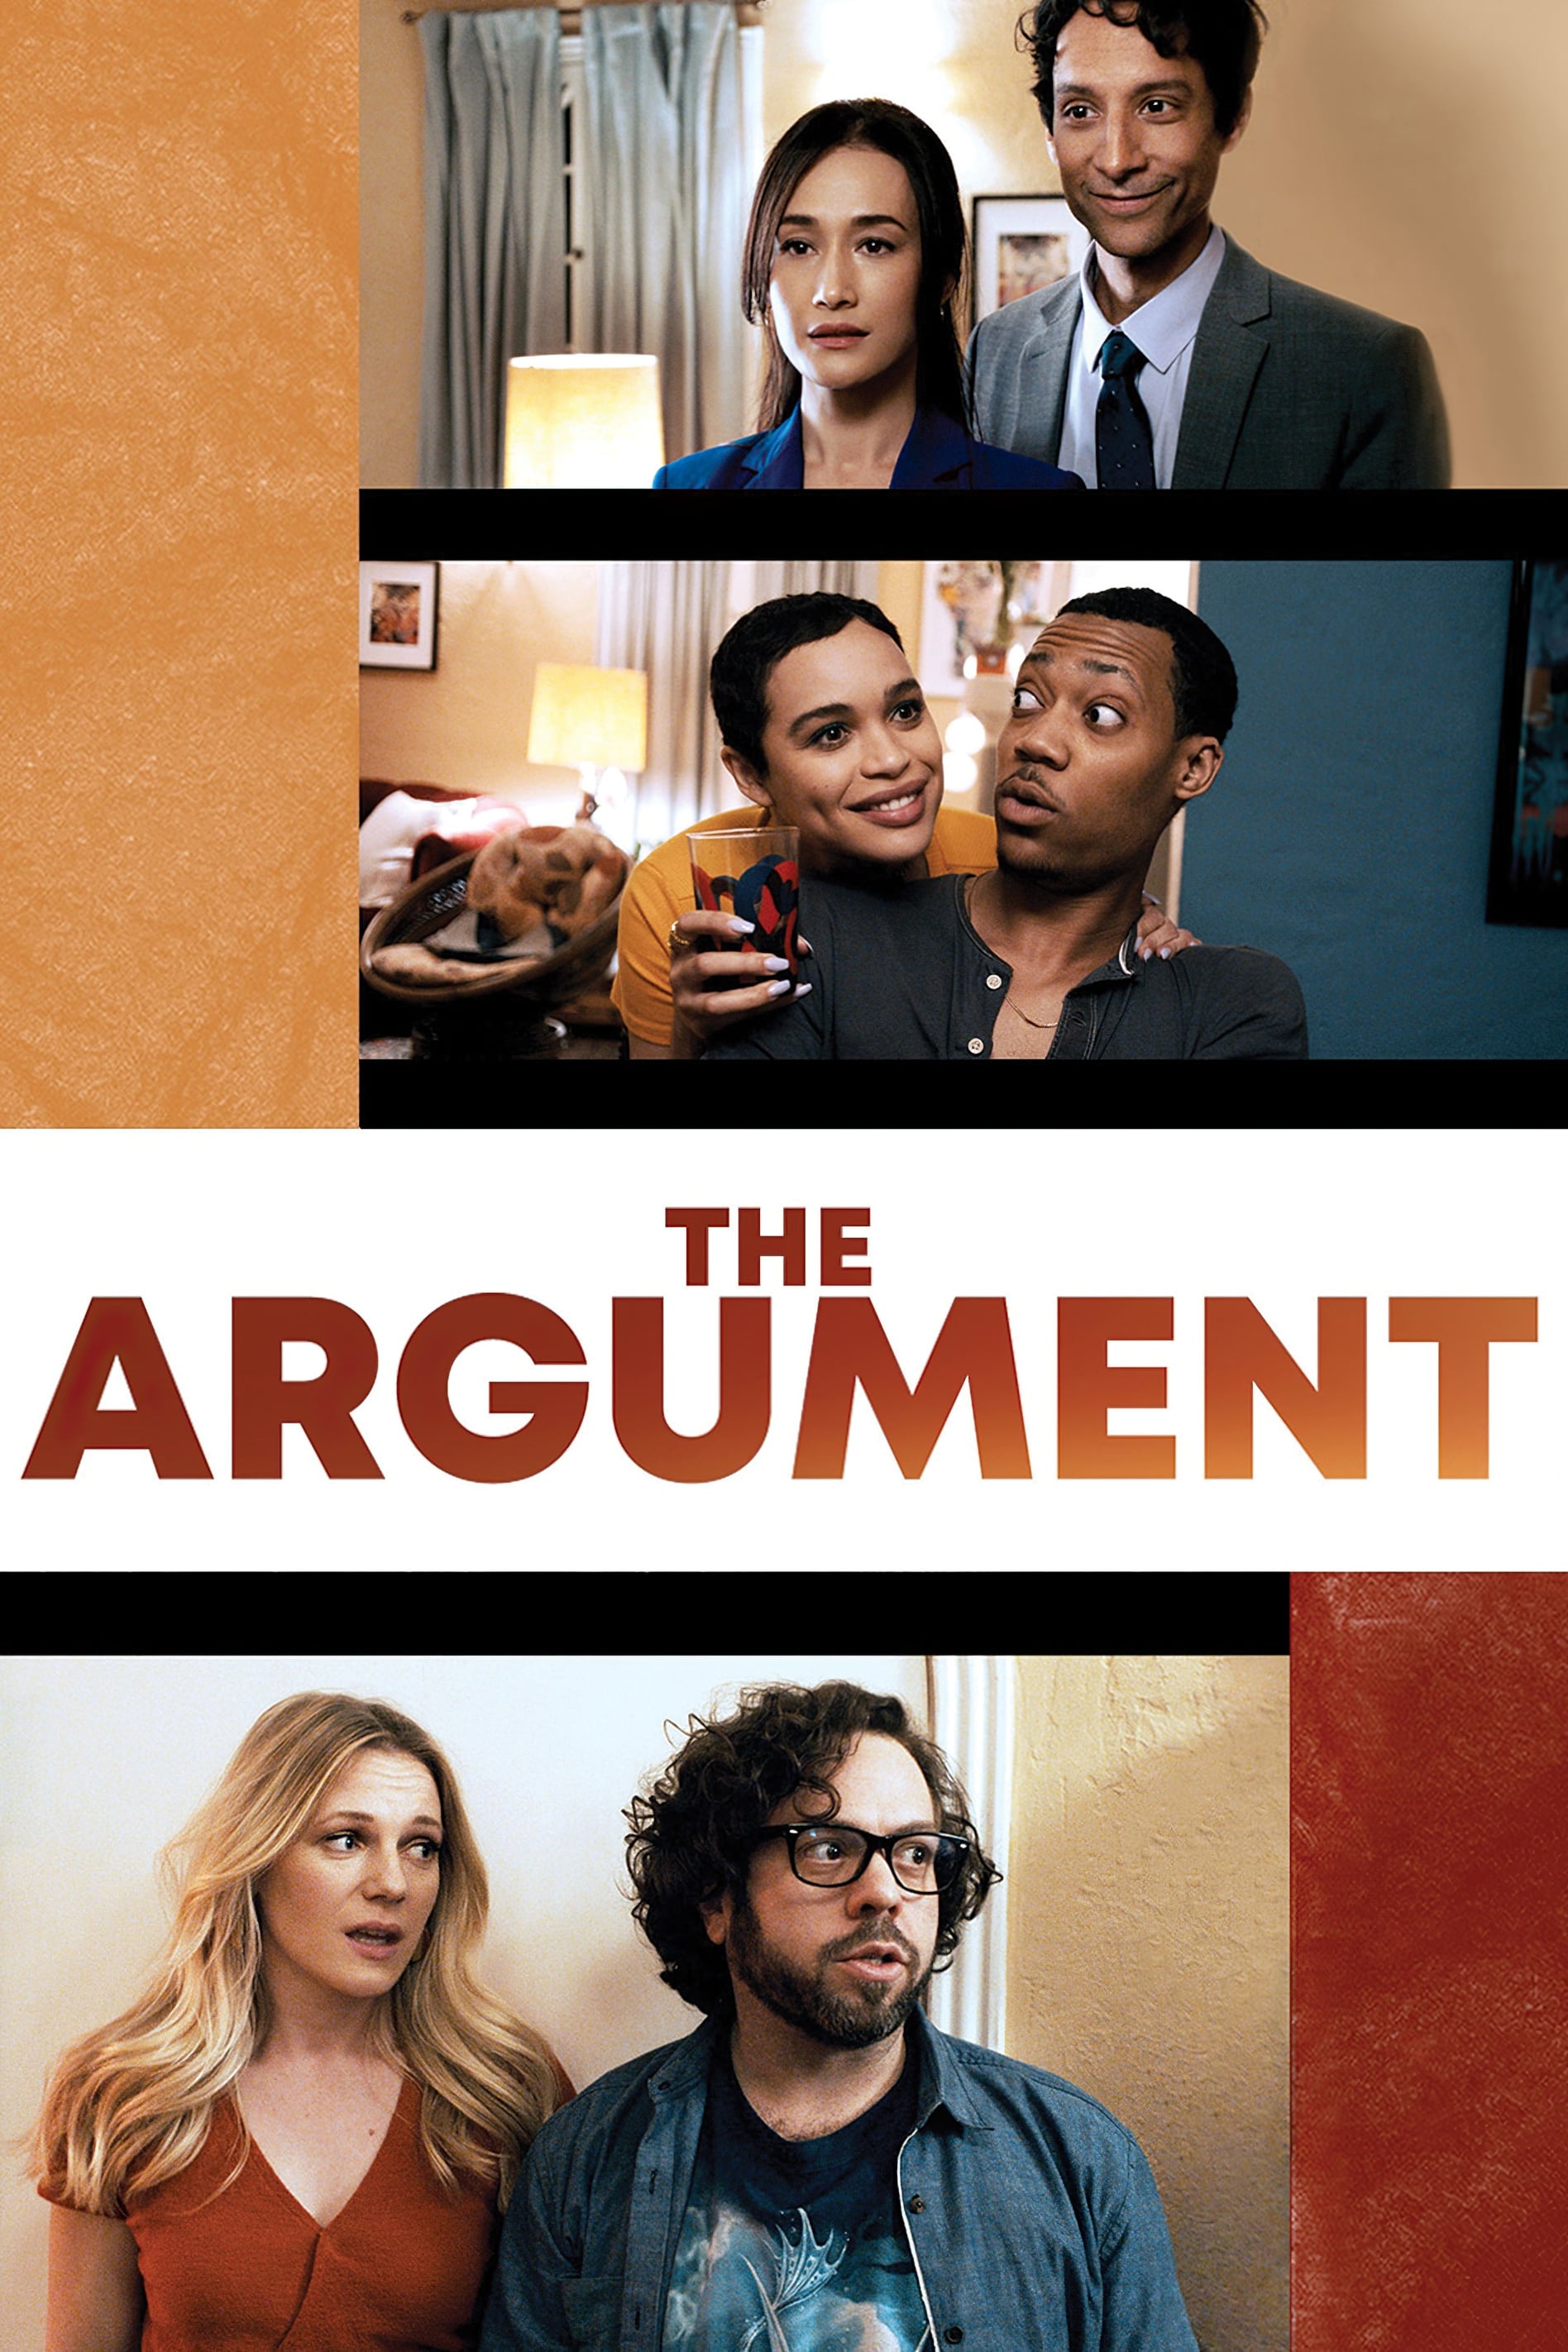 The Argument film